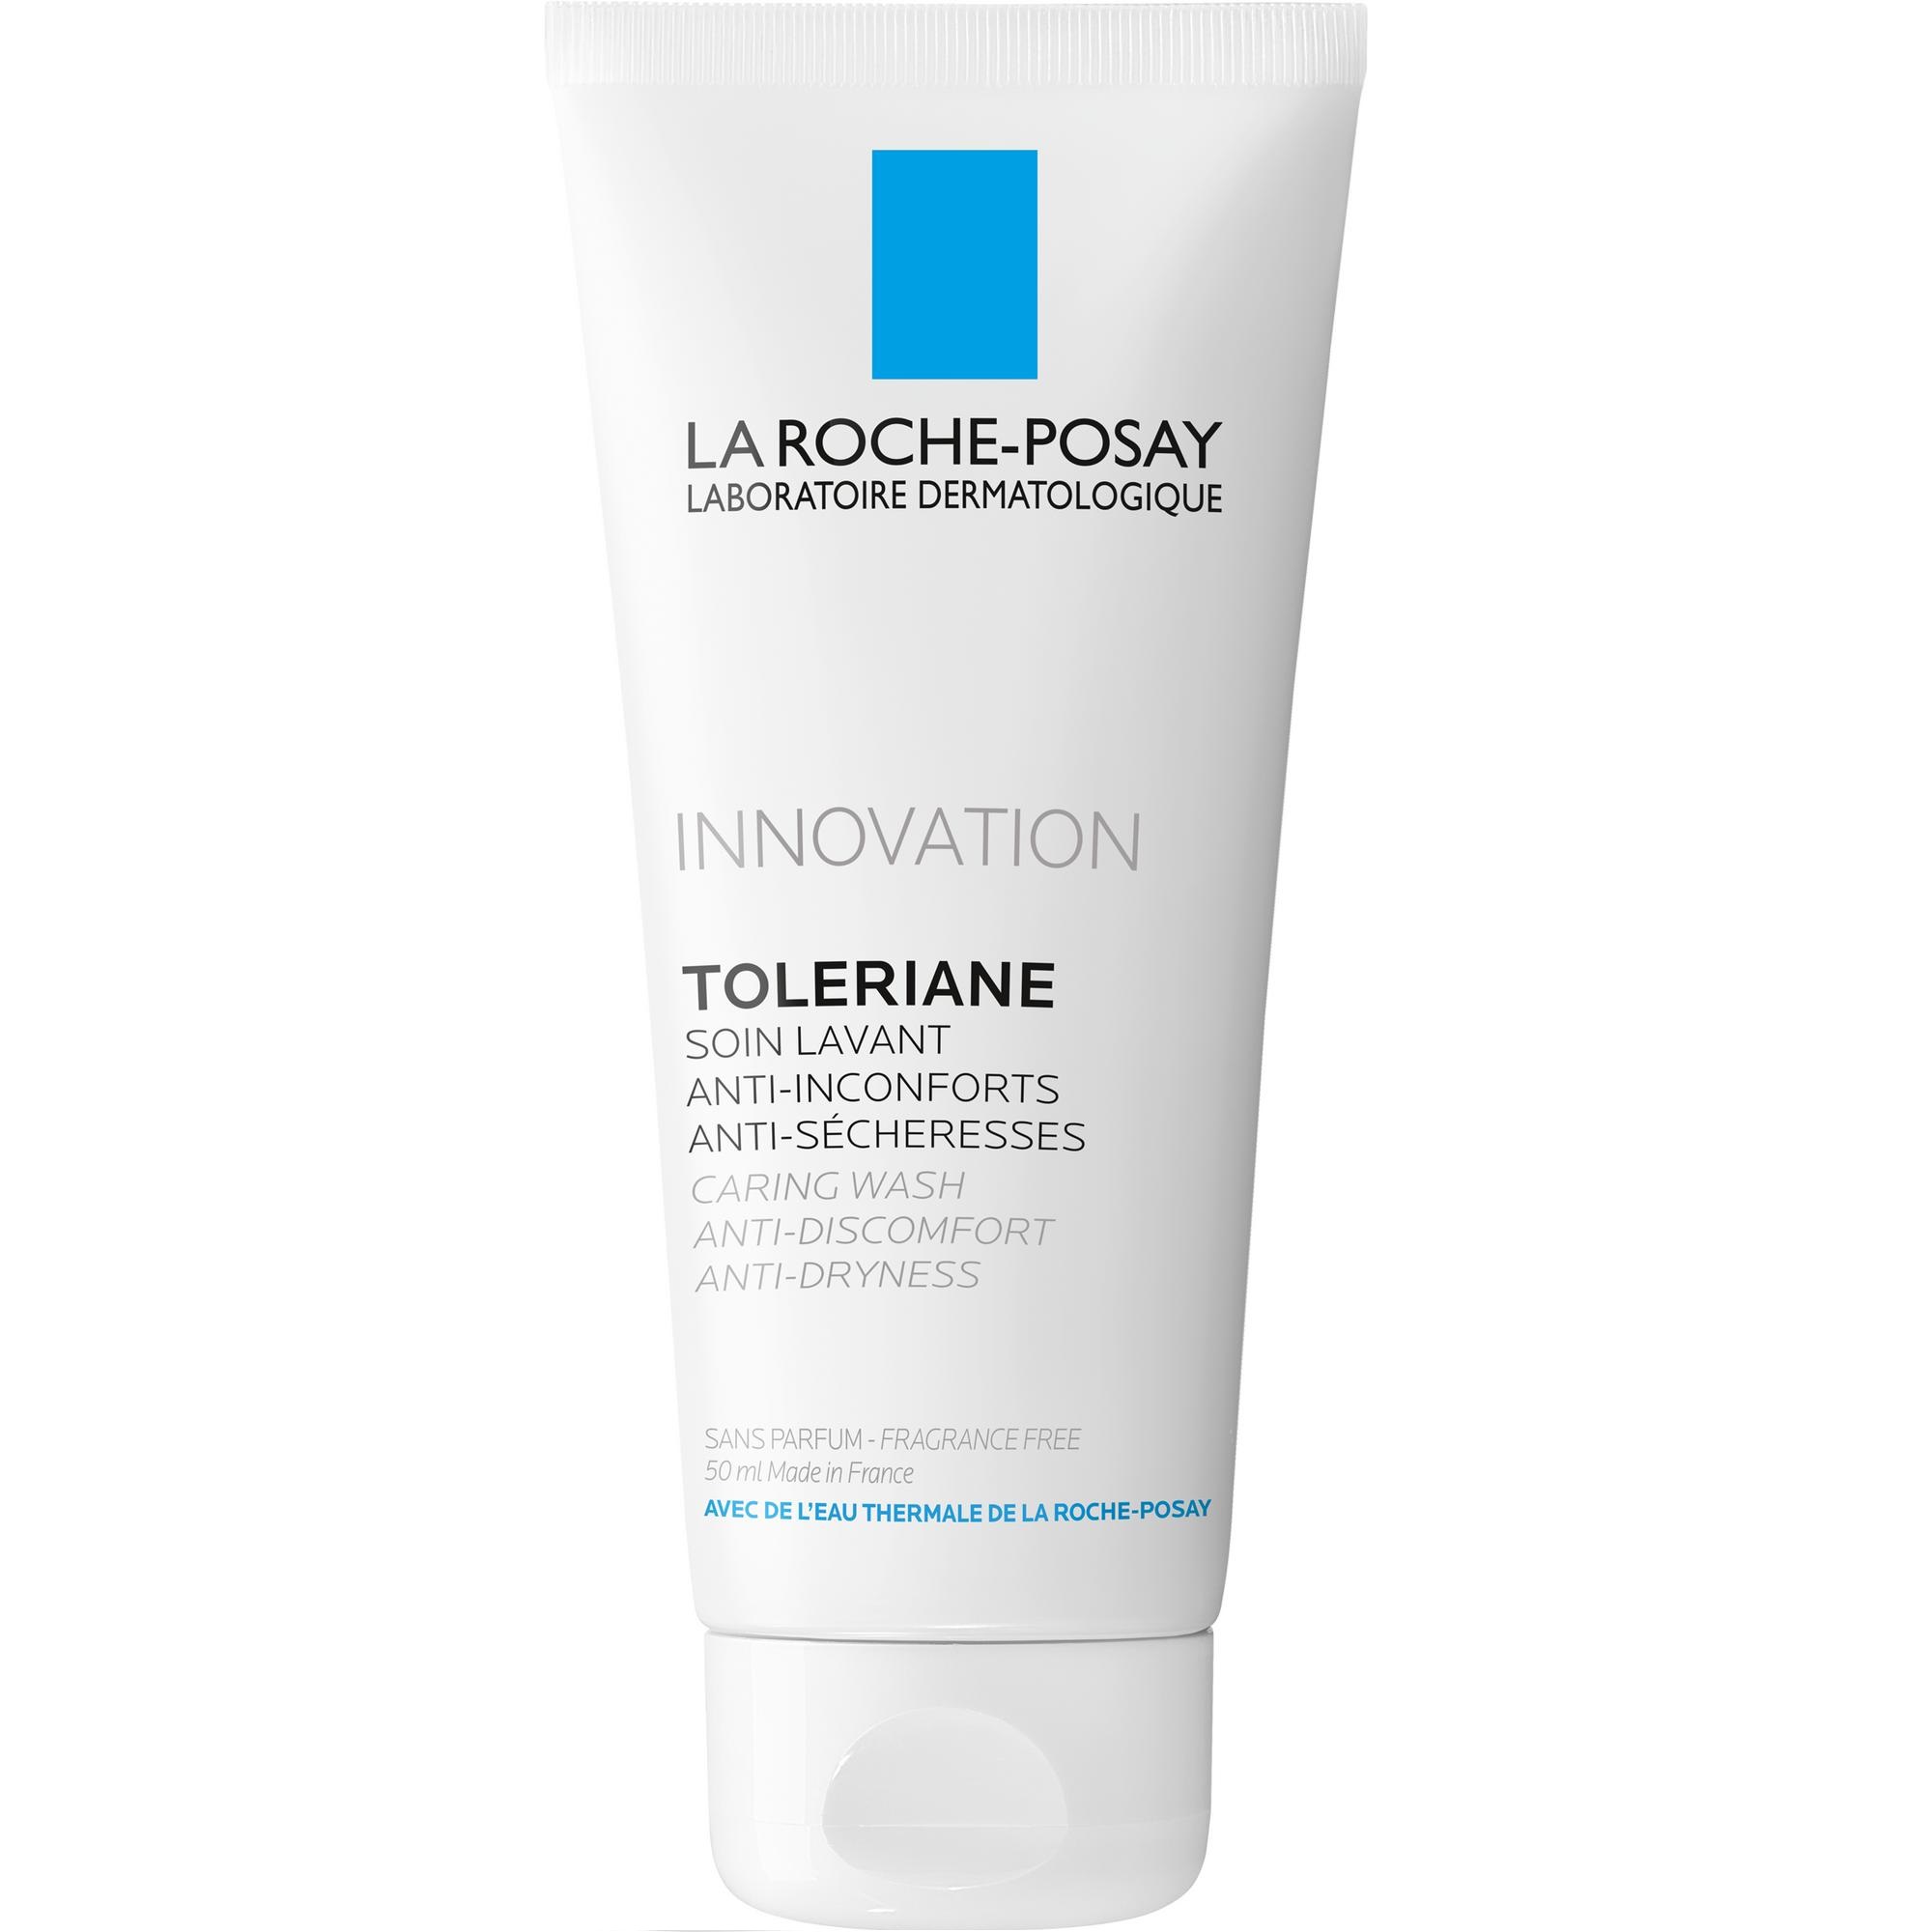 Купить La Roche-Posay Toleriane Sensitive крем 15мл + Toleriane очищающий гель-уход 50мл в подарок